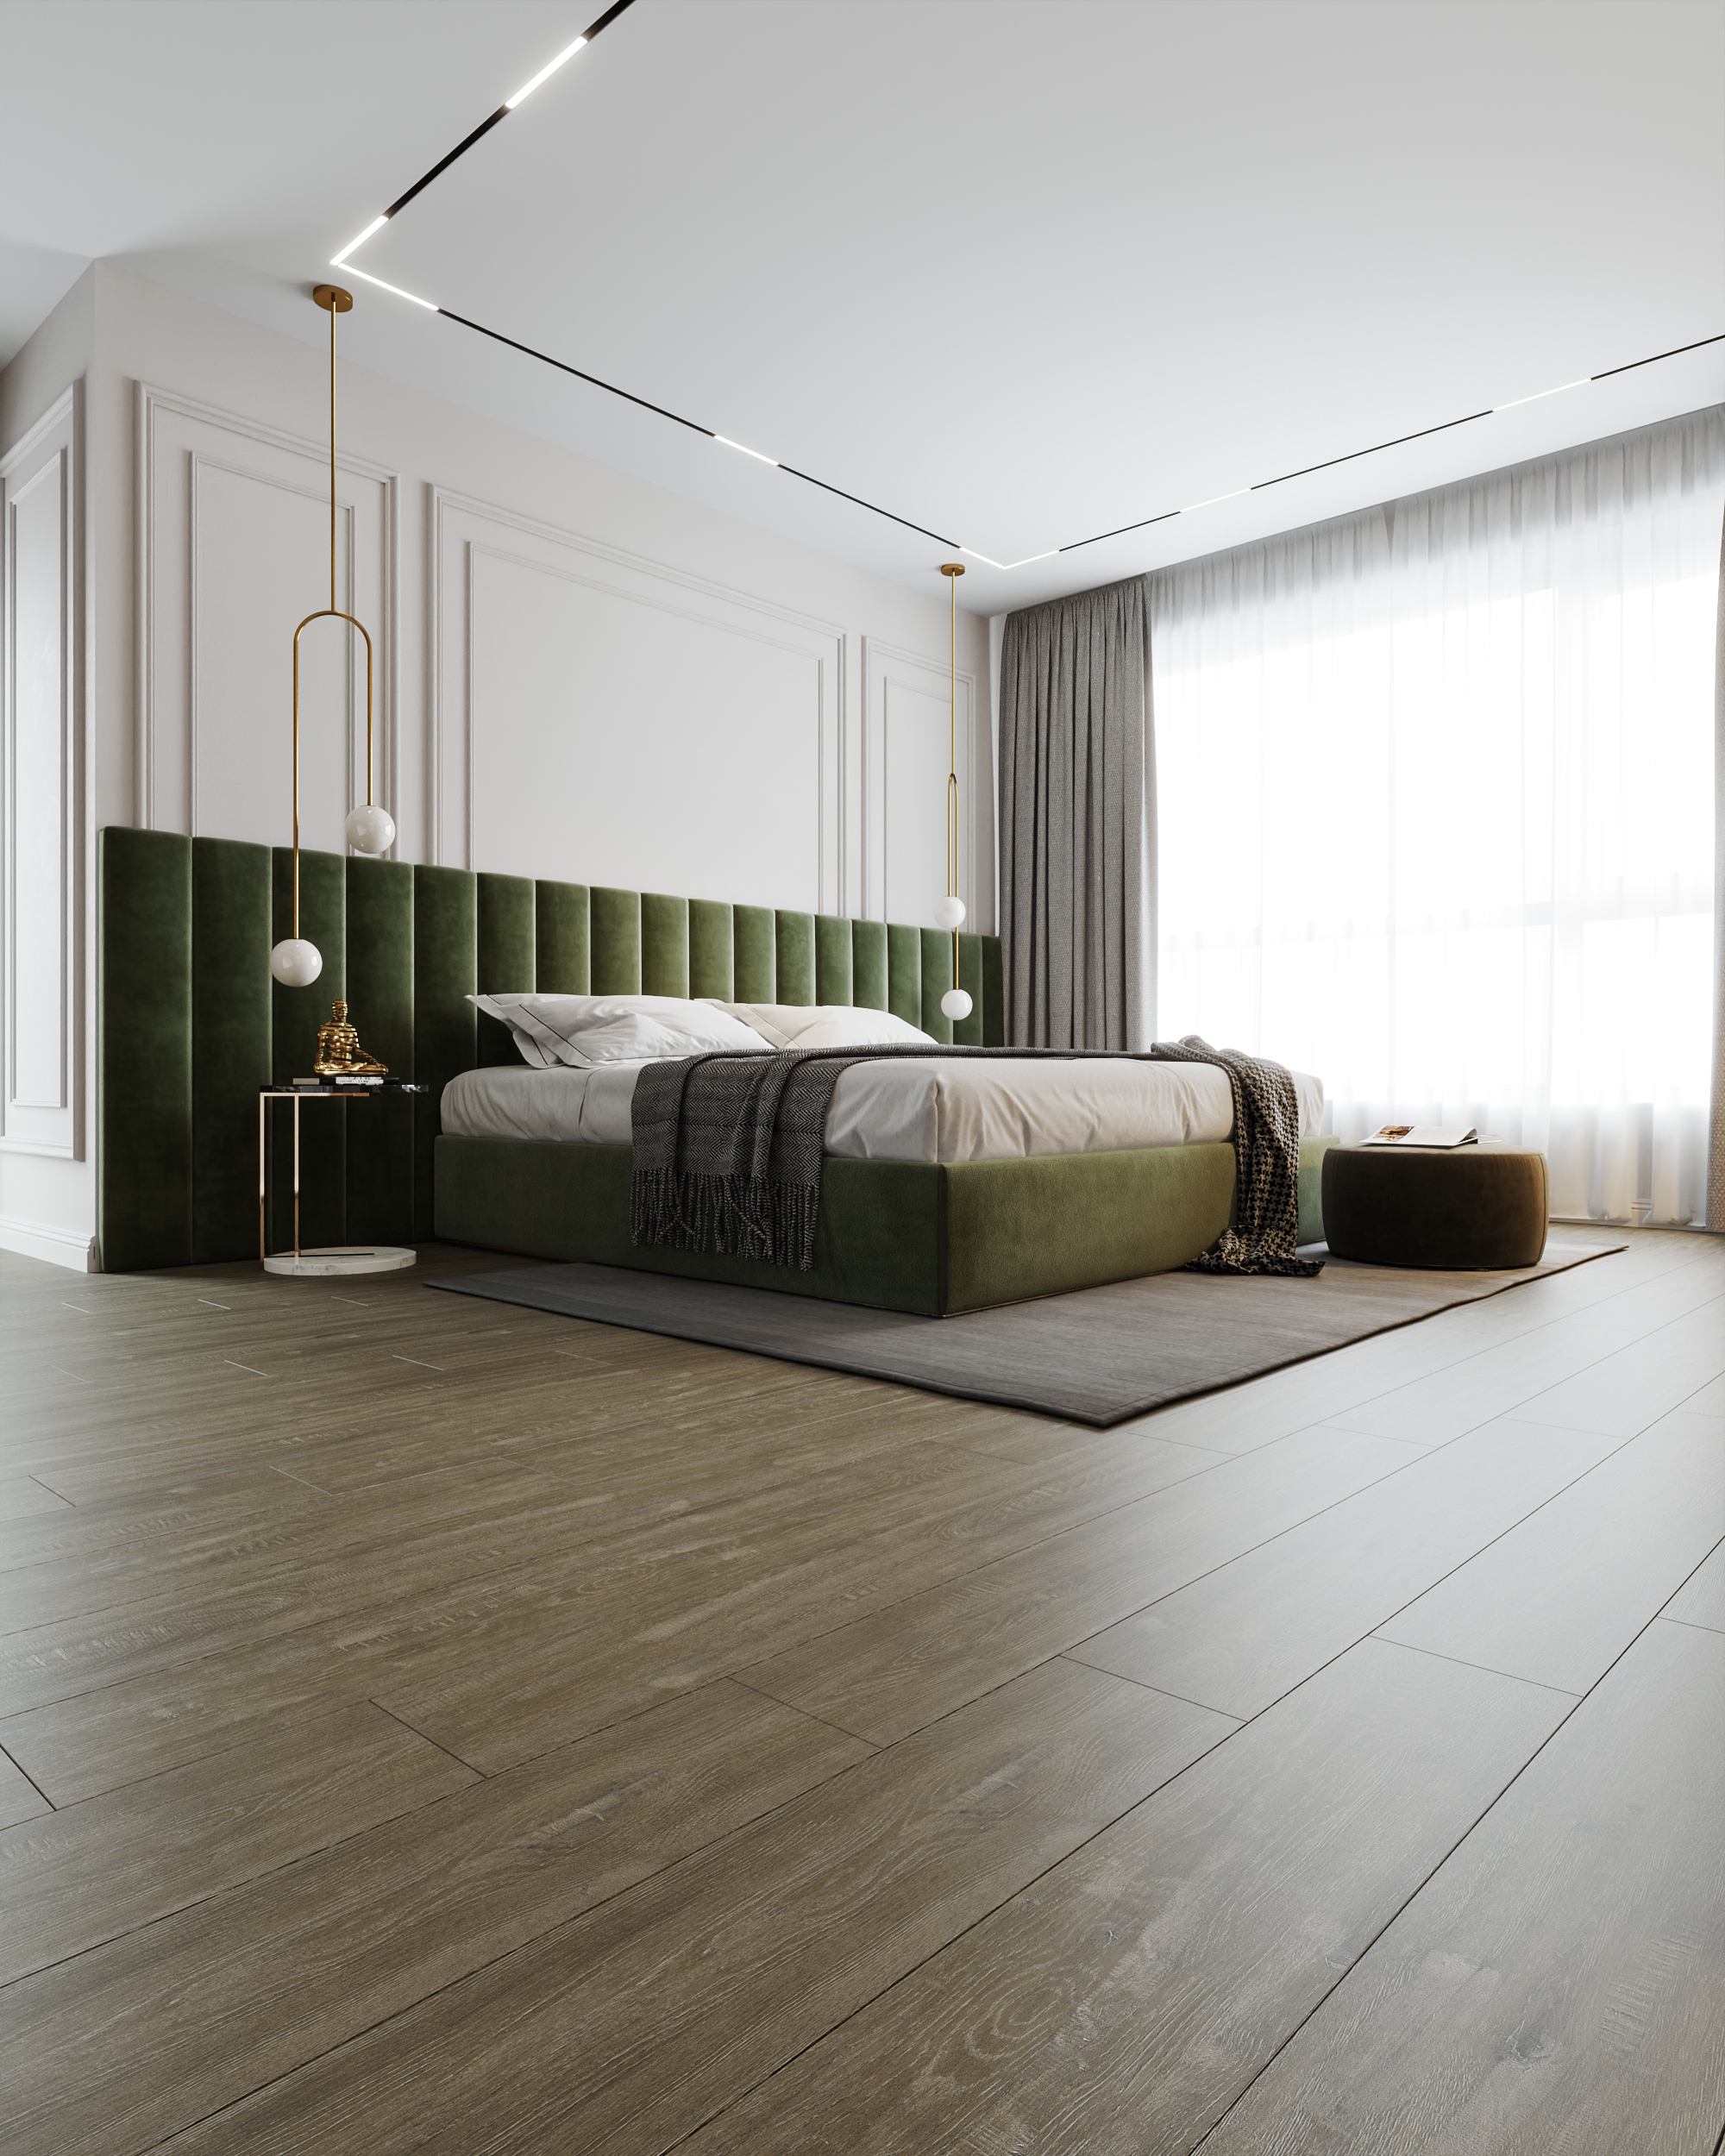 5 mẫu sàn gỗ phòng khách màu xám siêu đẹp cho tổ ấm hiện đại 2